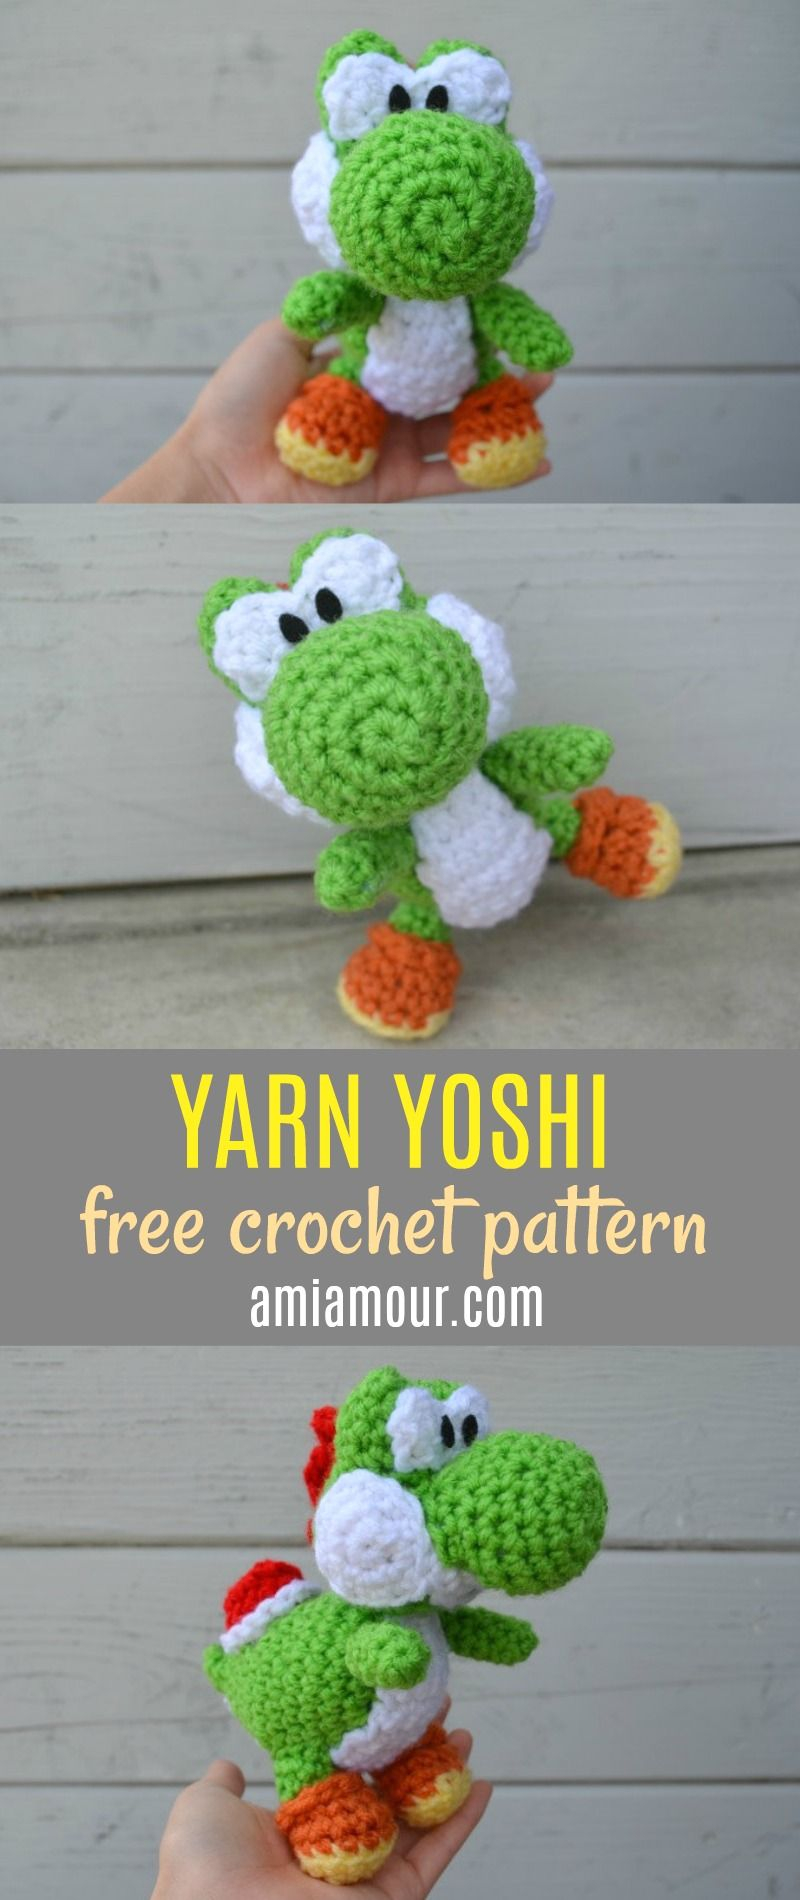 Yoshi Crochet Pattern Free Yoshi Amigurumi Pattern Amigurumi Pinterest Crochet